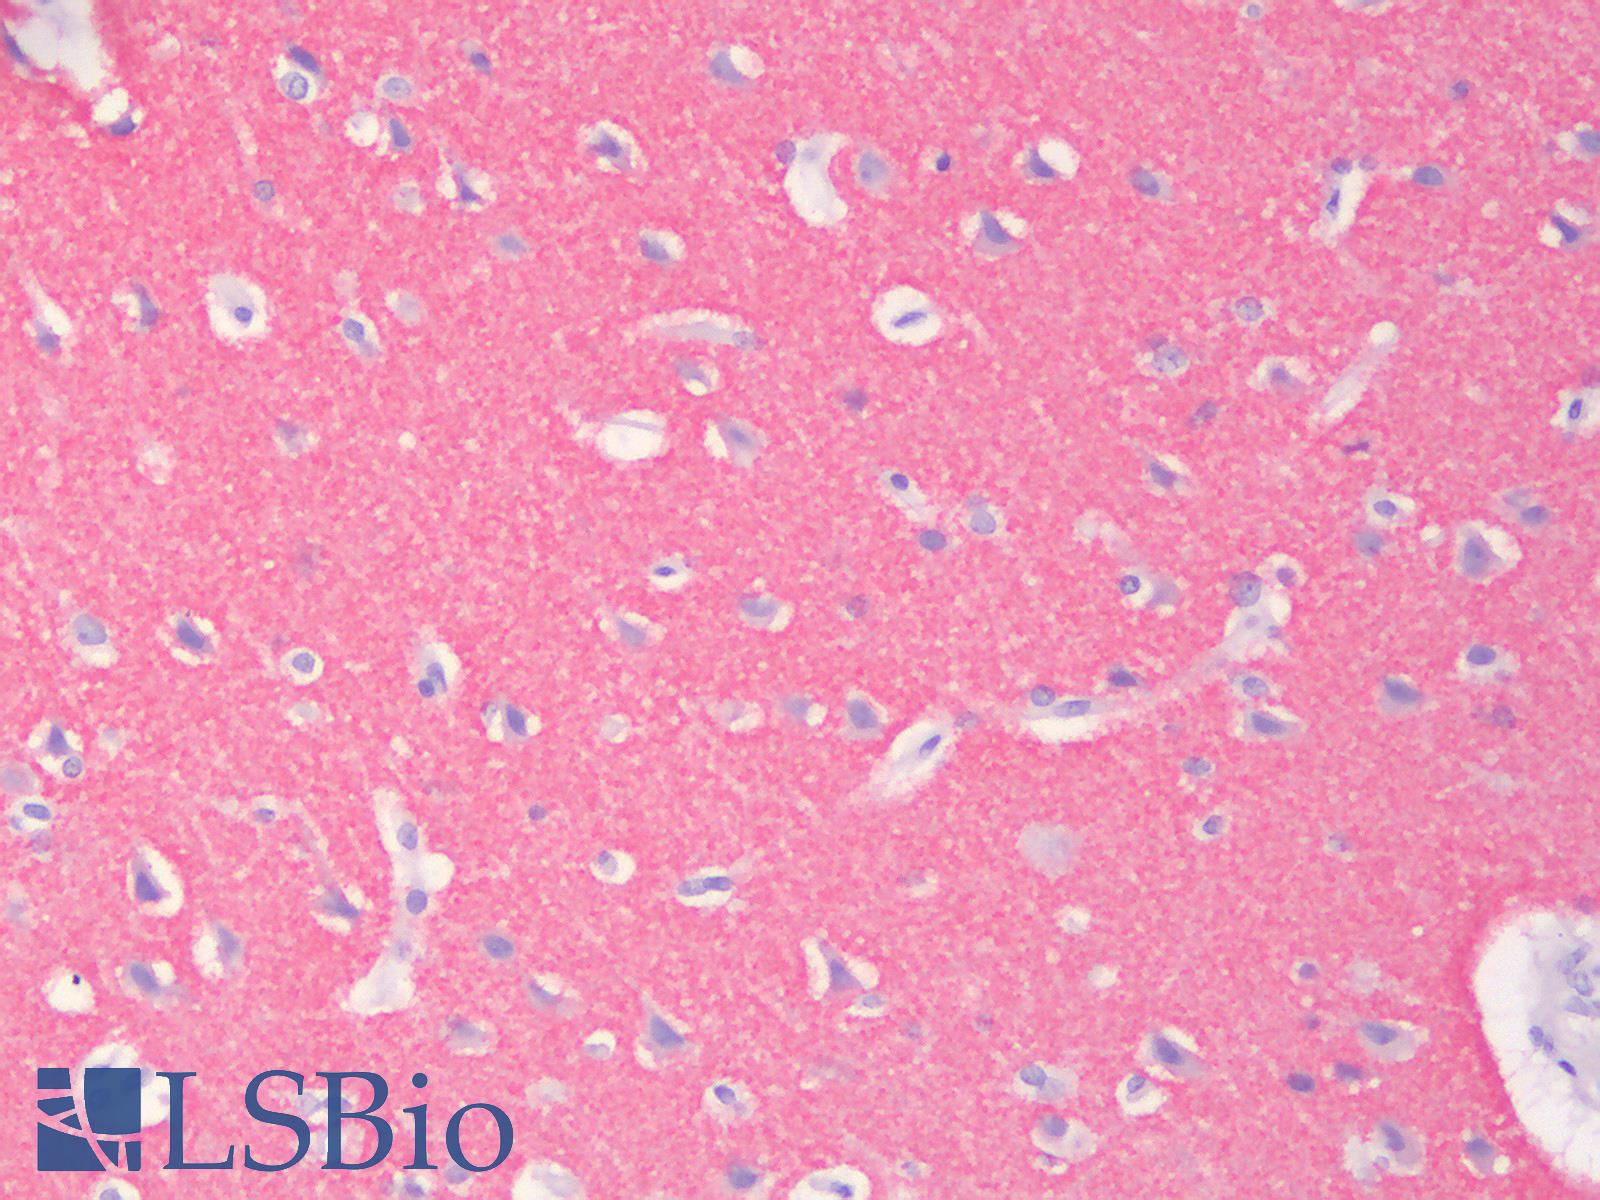 SYP / Synaptophysin Antibody - Human Brain, Cortex: Formalin-Fixed, Paraffin-Embedded (FFPE)